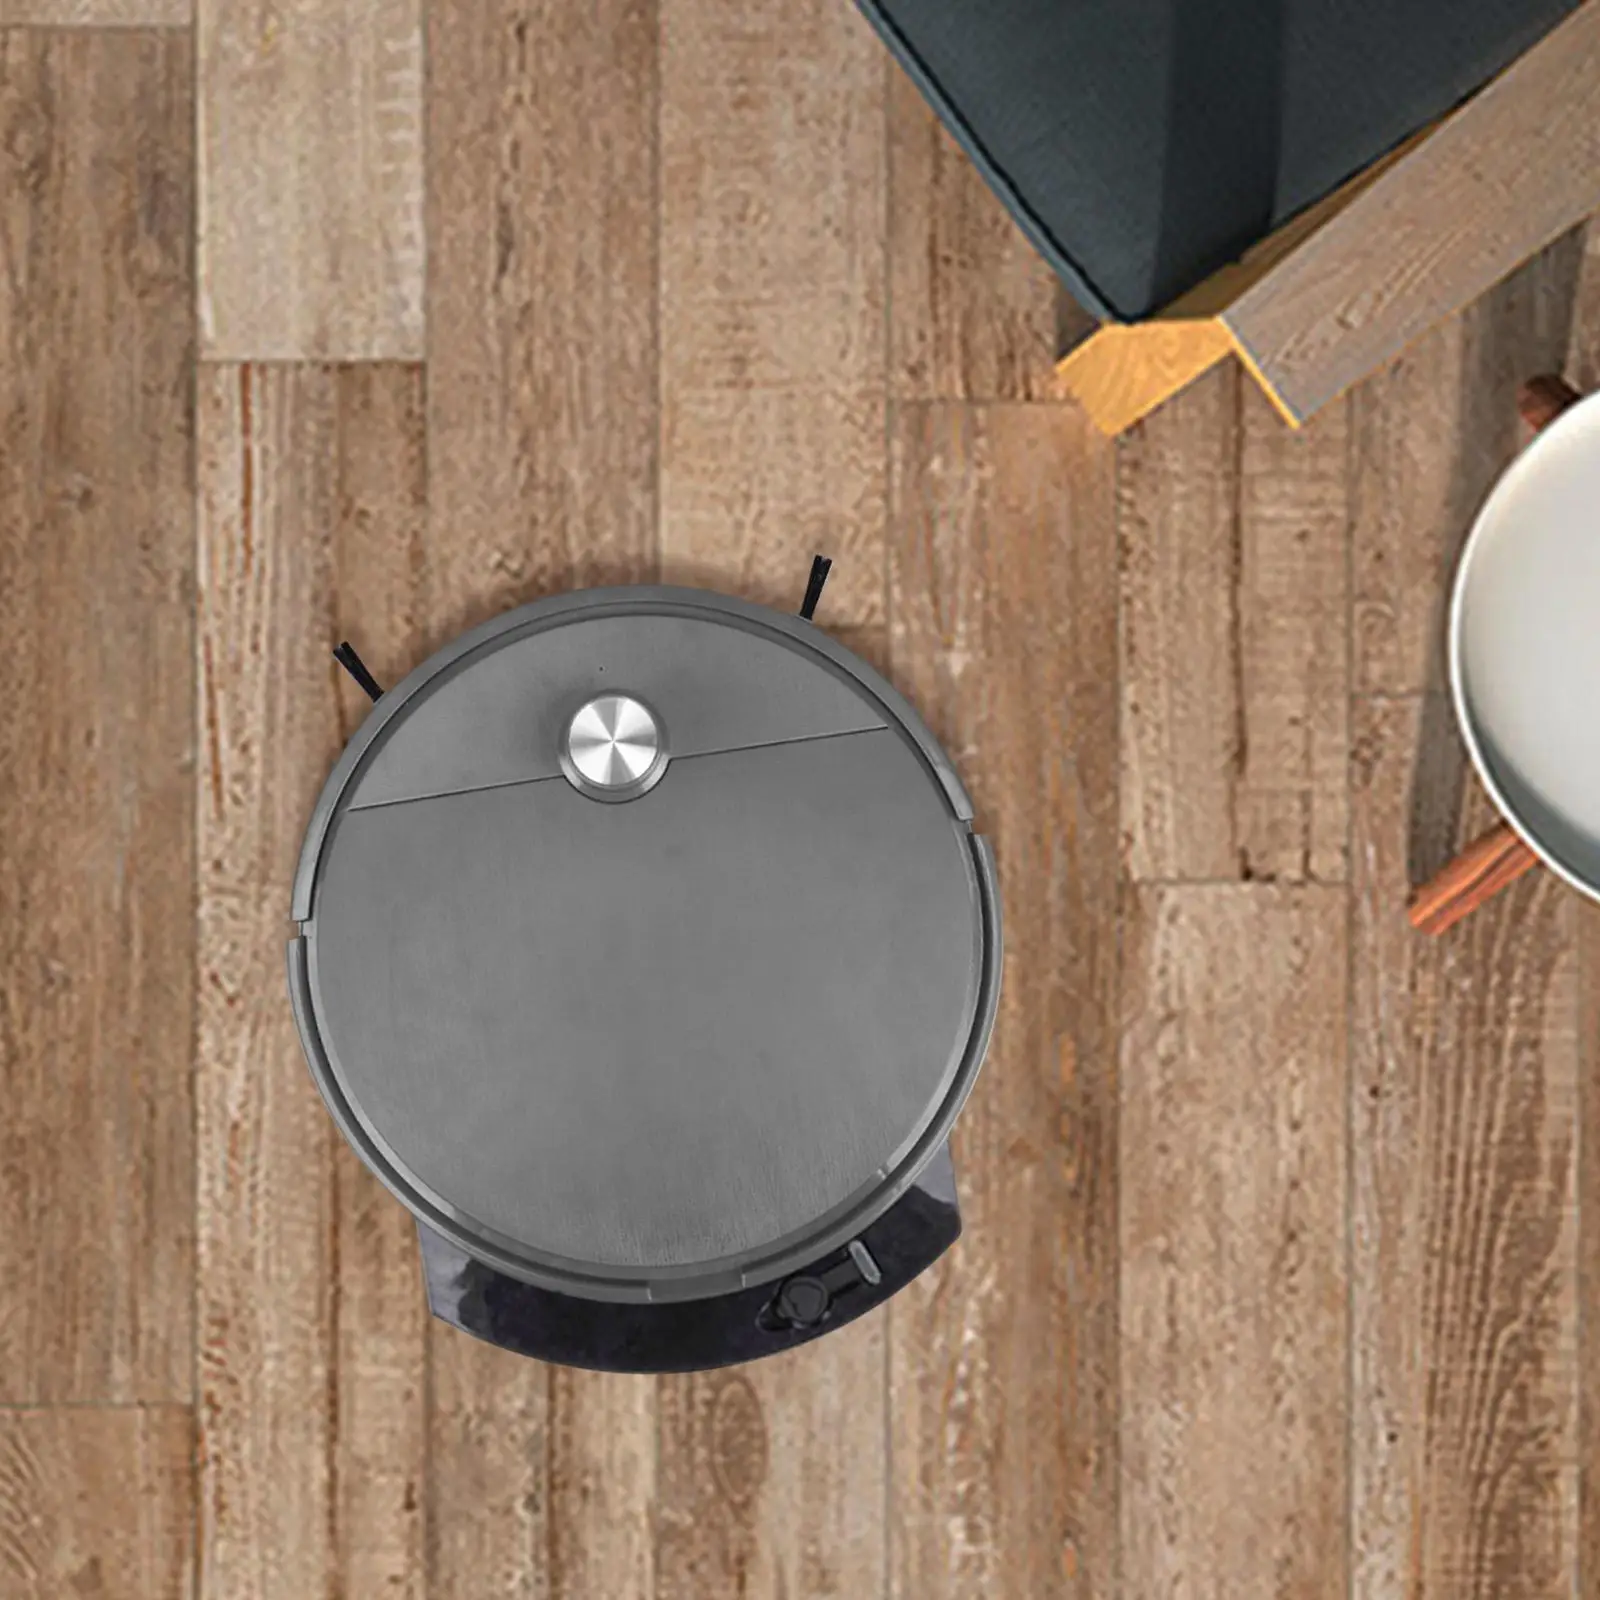 

3-In-1 Robot Vacuum Cleaner Floor Sweeping Cleaning Robotic Vacuums for Pet Hair Tile Floor Carpets Hardwood Floors Home